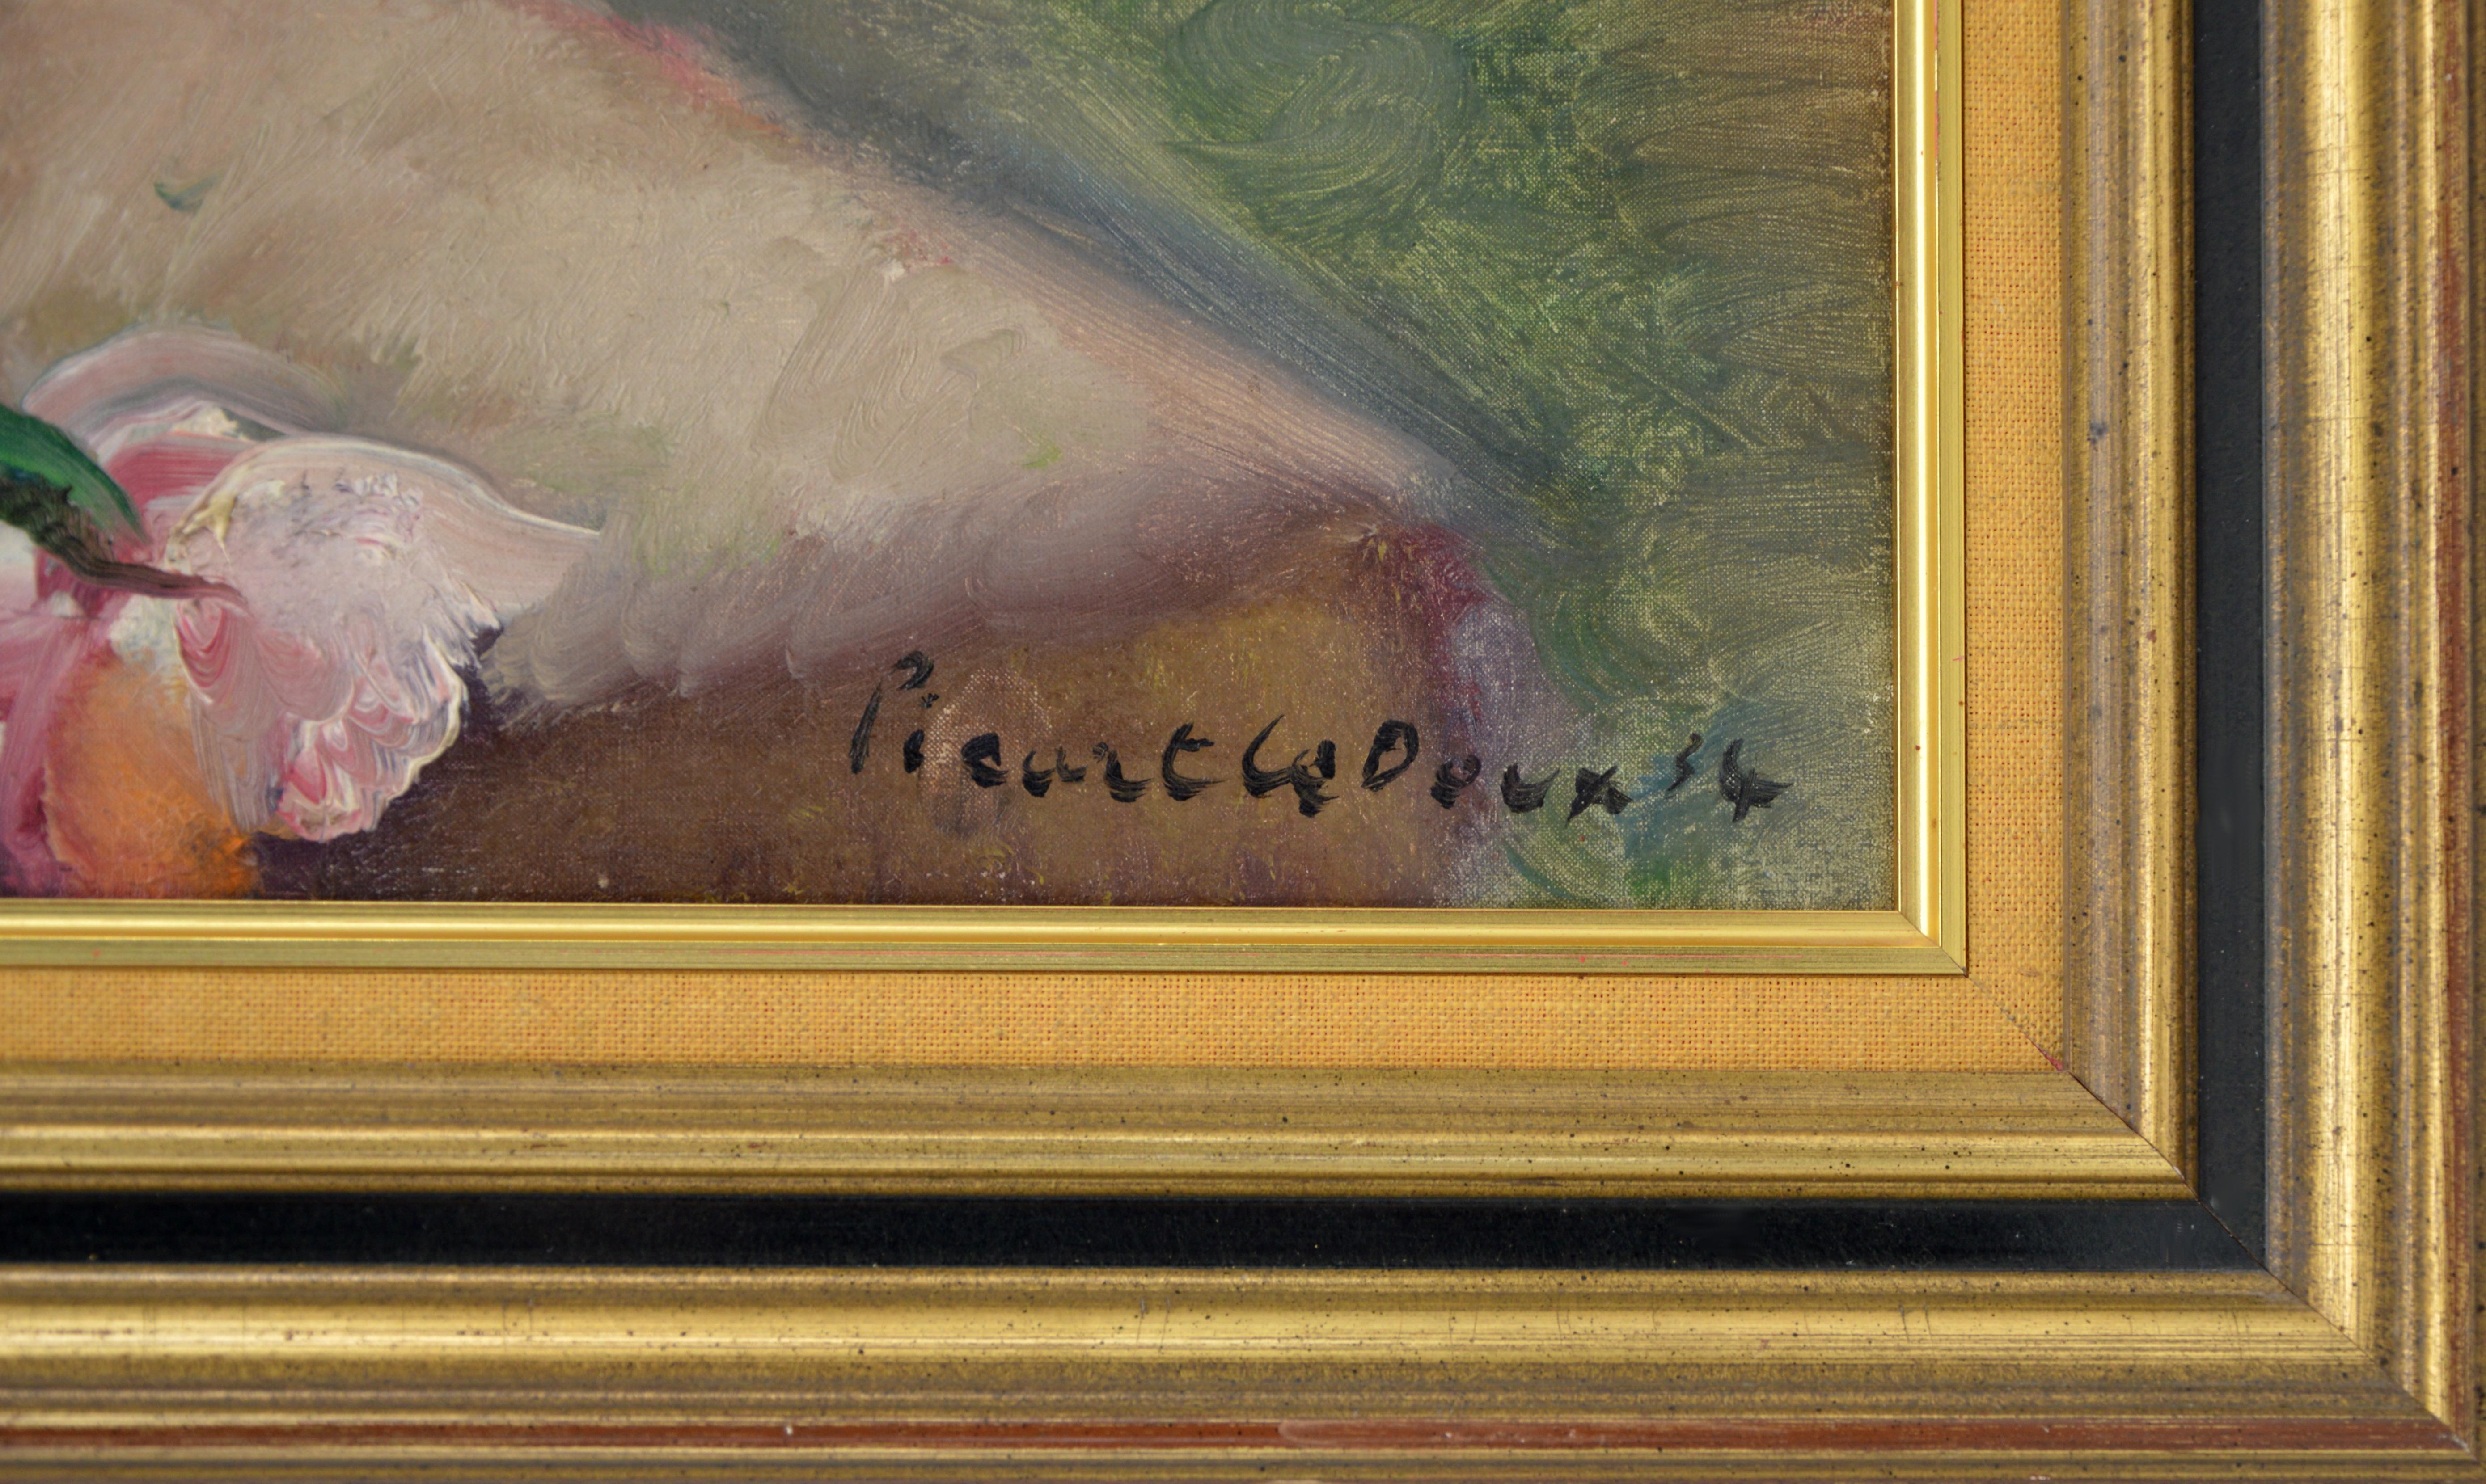 Öl auf Leinwand von Charles PICART LE DOUX (1881-1959), Frankreich, 1934. Blumenstrauß aus wilden Blumen. Typisches Kunstwerk im Stil von Charles Picart Le Doux. Die kräftigen und kontrastreichen Farben verleihen diesem Werk jedoch eine